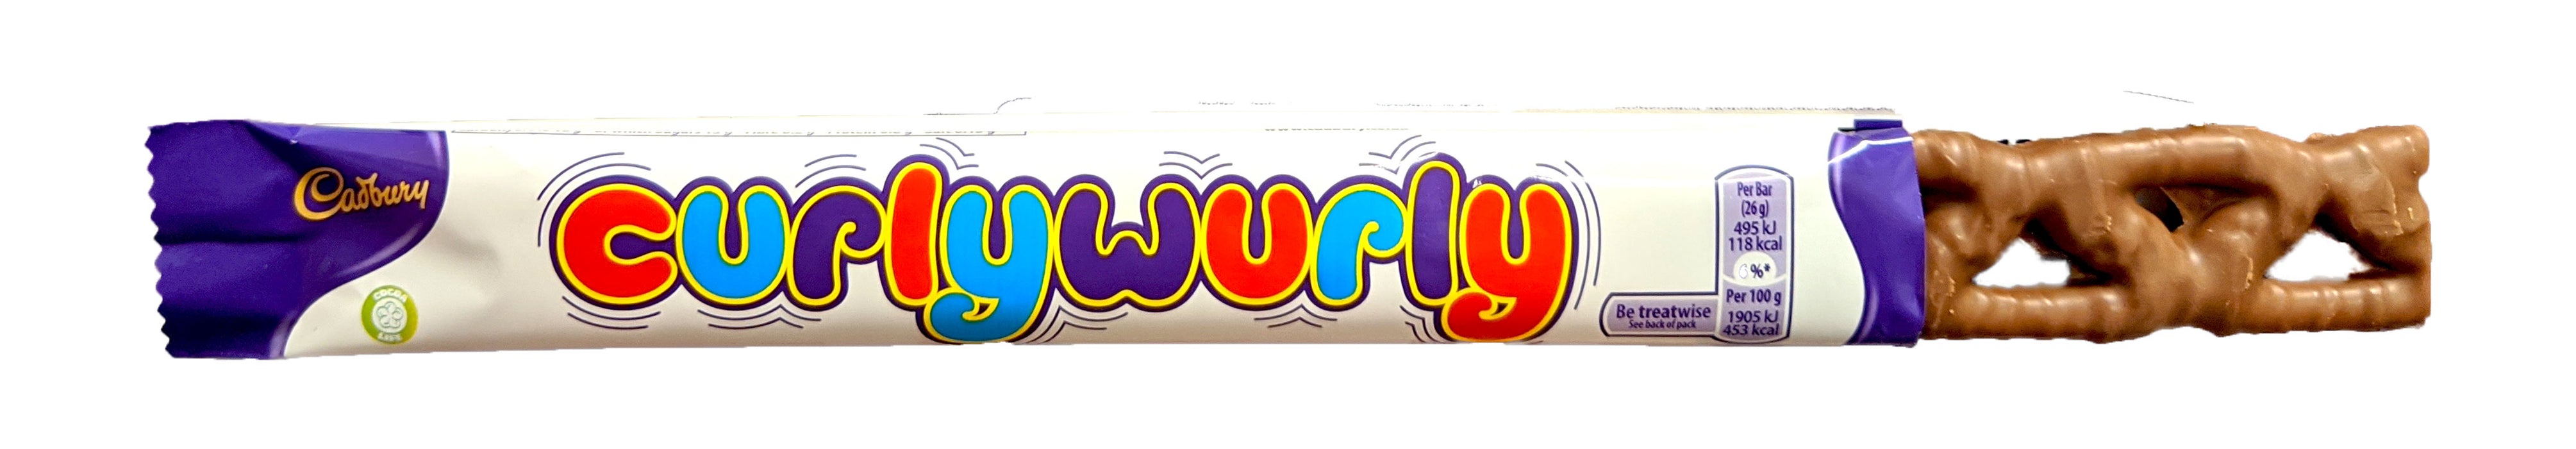 Curly Wurly 1.4oz Bar